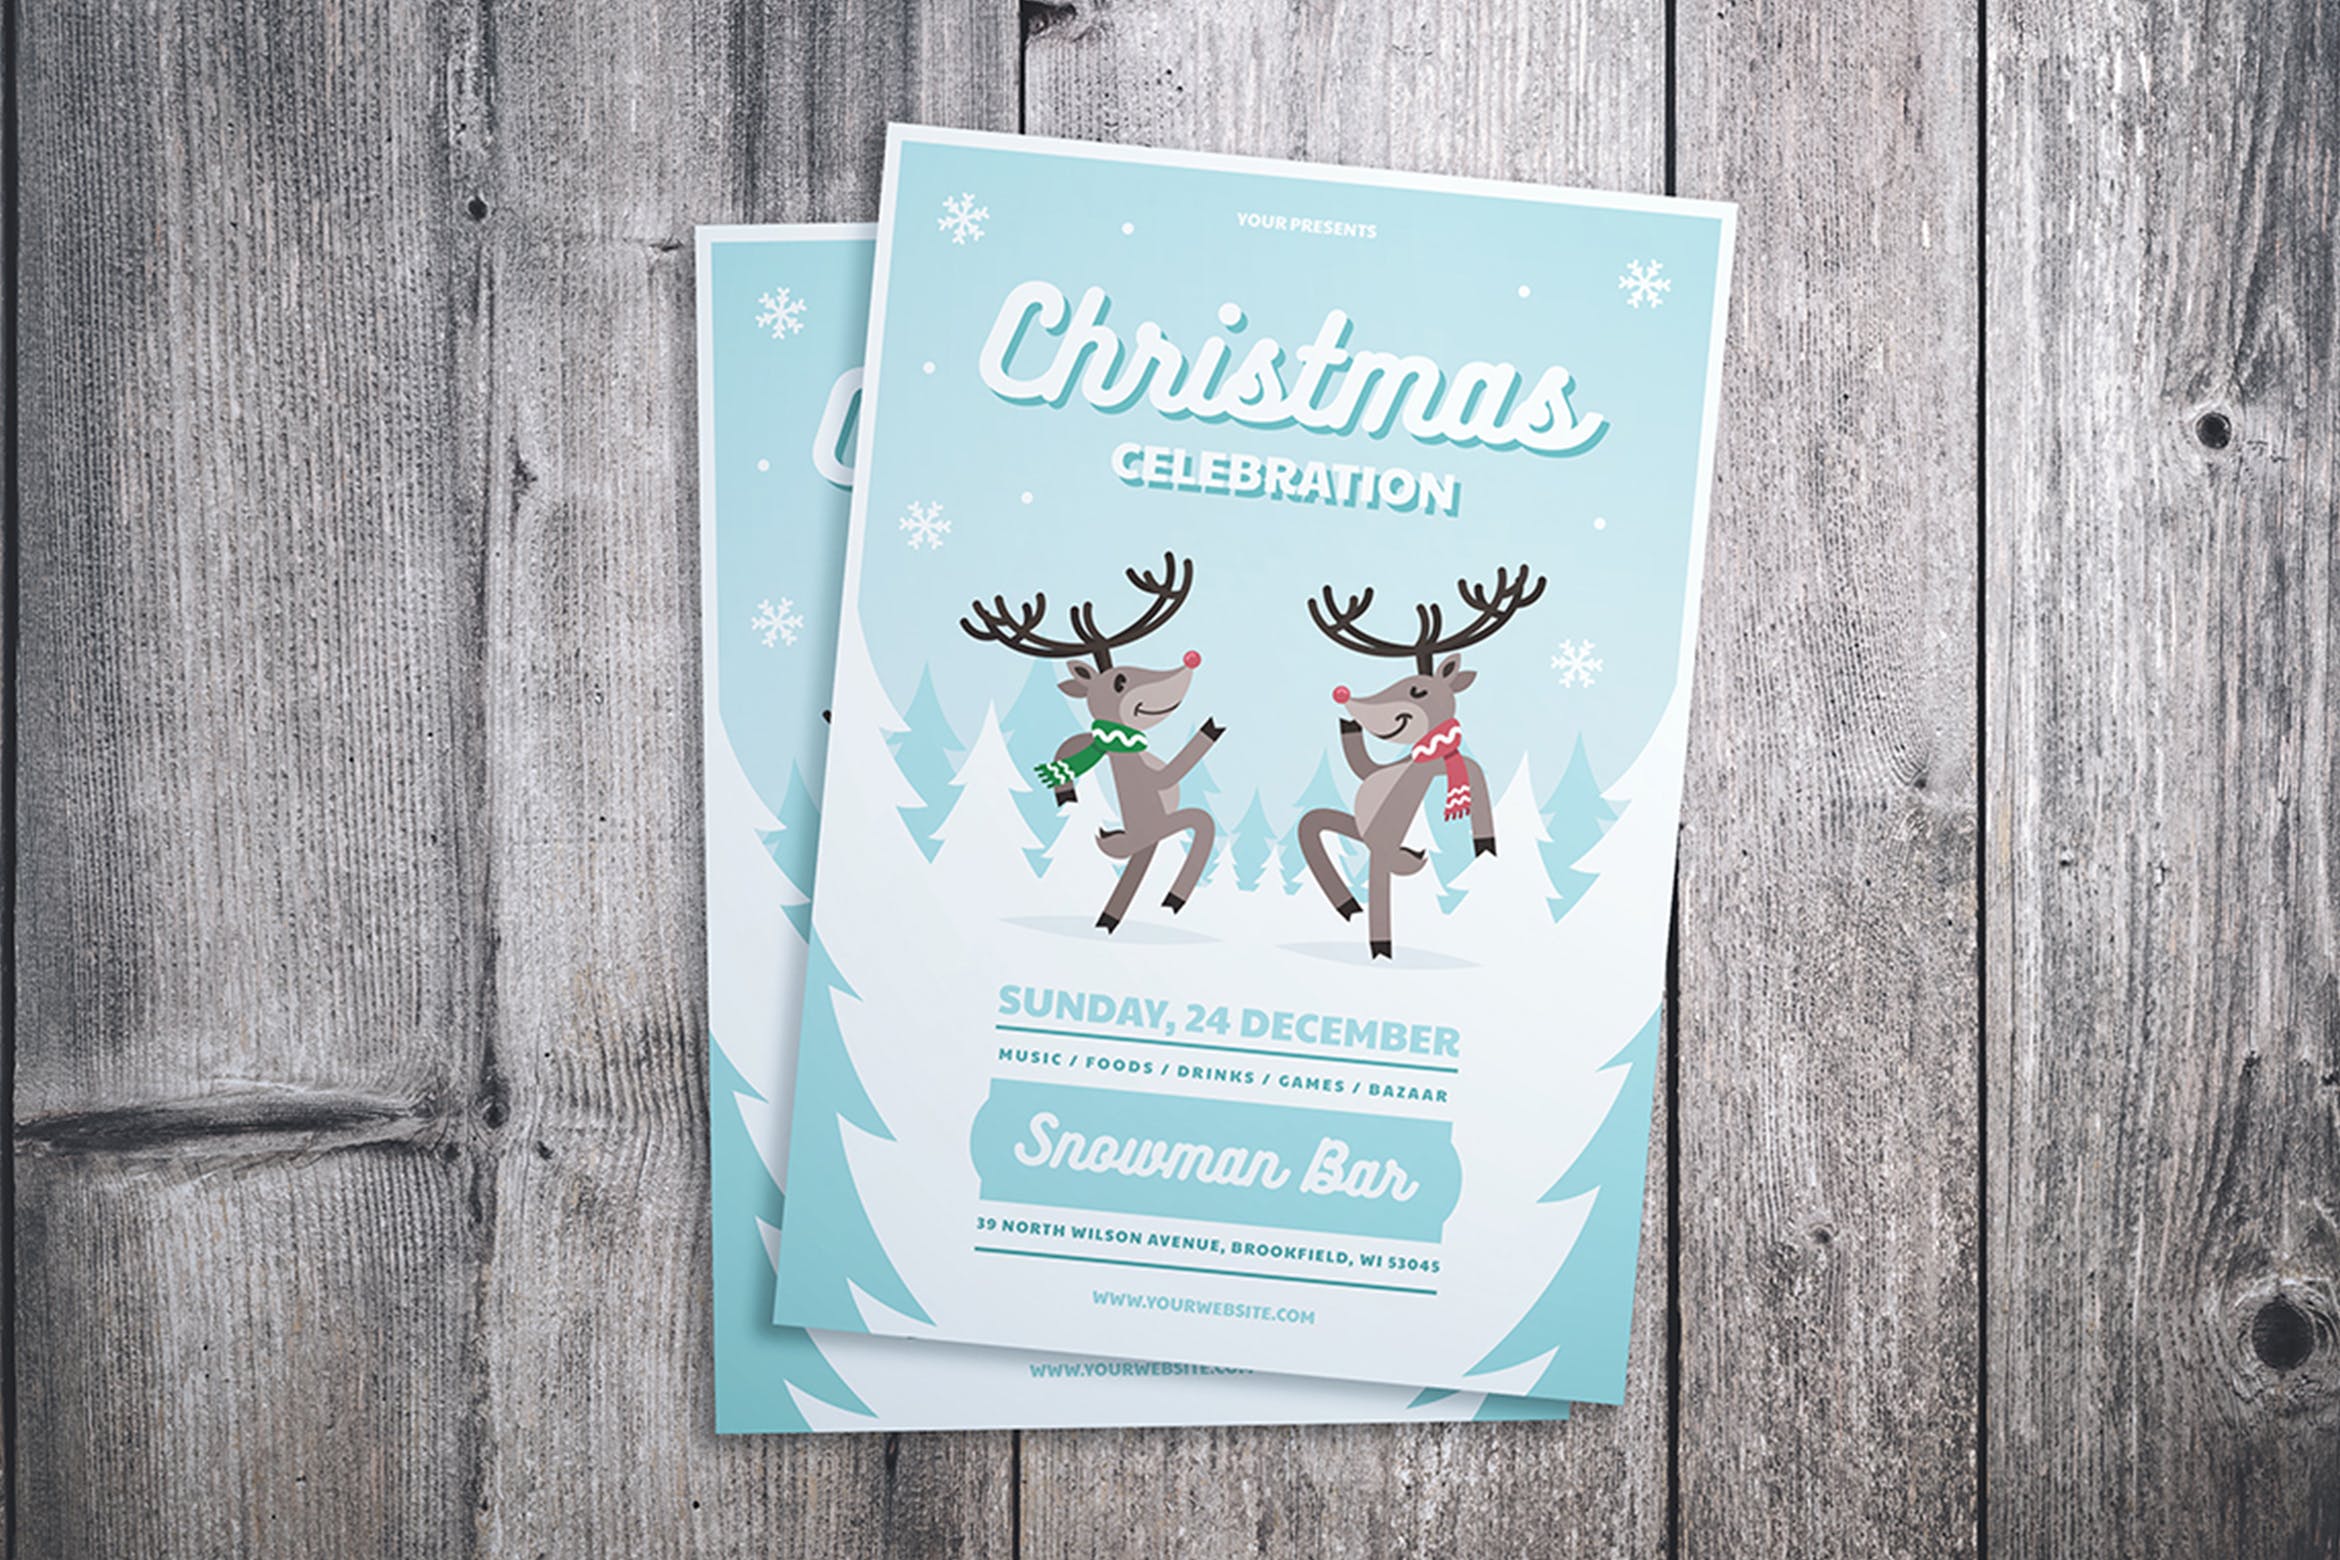 与鹿共舞圣诞节庆祝派对活动海报设计模板 Christmas Celebration Flyer插图